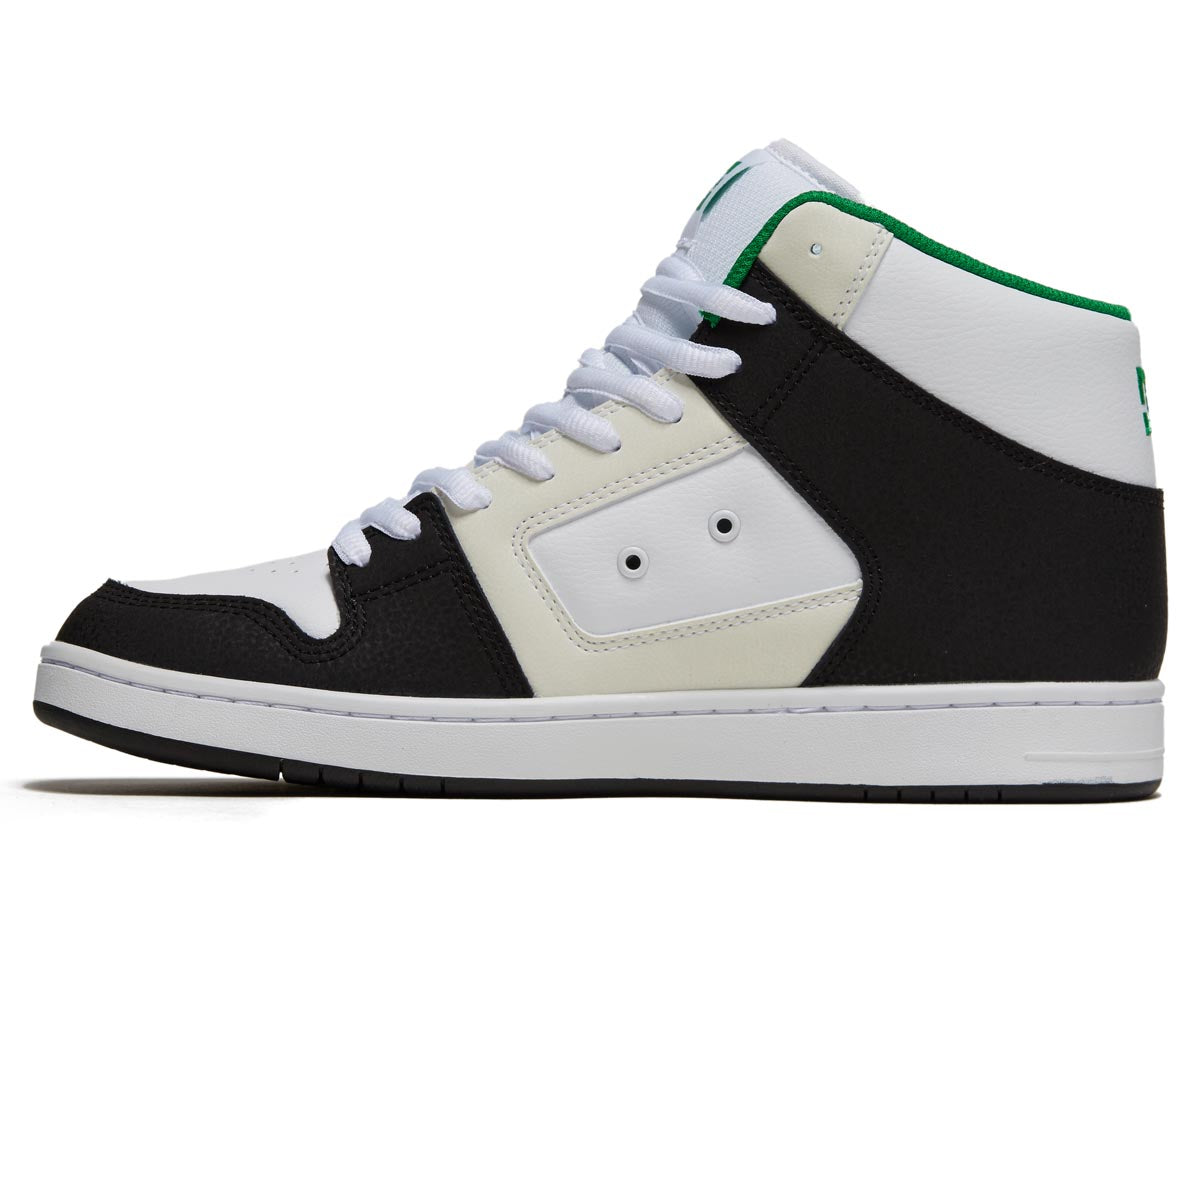 DC Manteca 4 Hi Shoes - Black/White/Green image 2